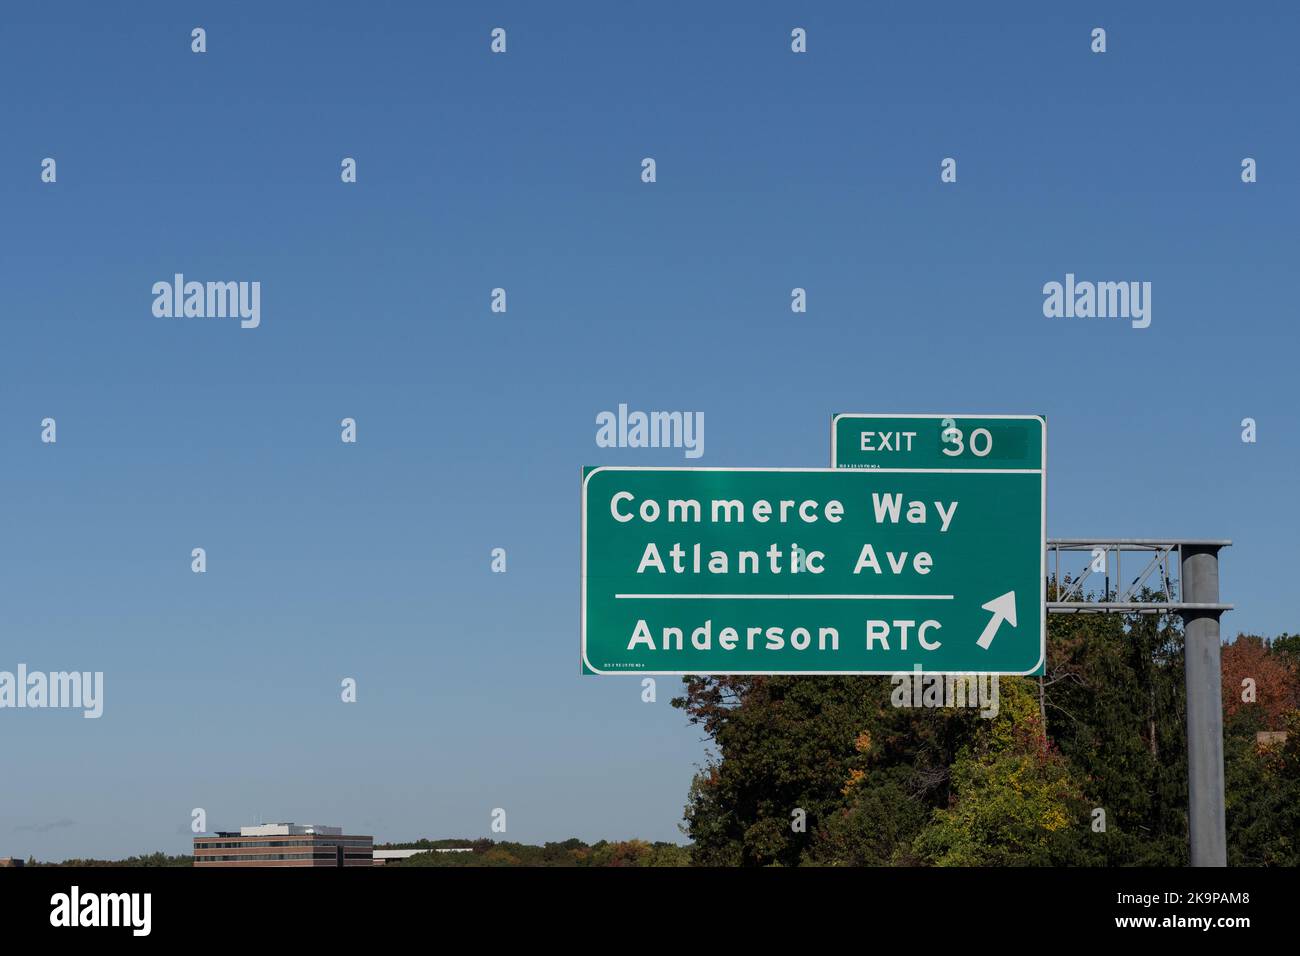 Panneau de l'autoroute sur la route 93 en direction du nord à Reading, Massachusetts : sortie 30 Commerce Way, Atlantic Ave, et Anderson RTC Banque D'Images